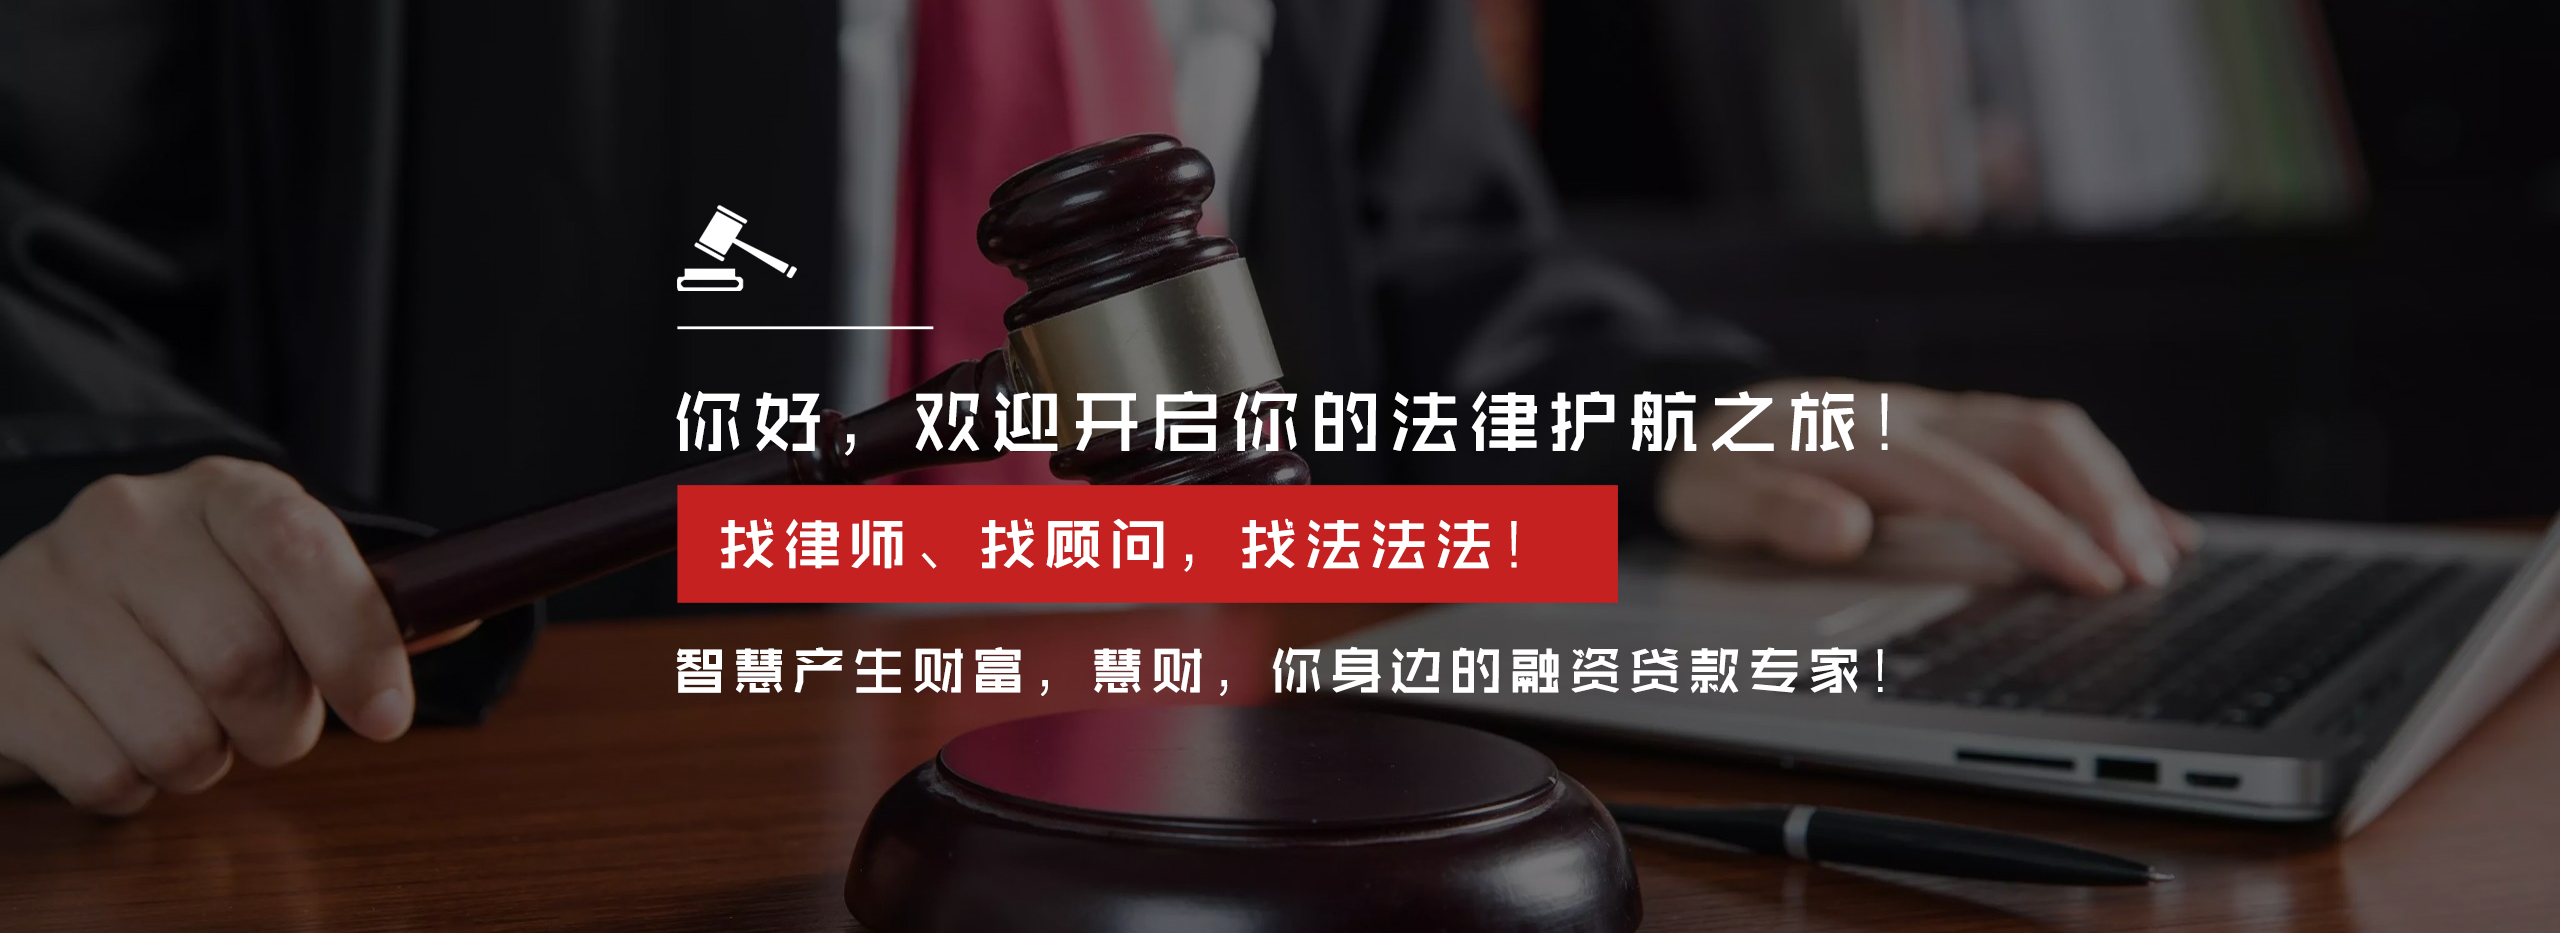 新三板经营管理_工商管理相关-四川法法法信息科技有限公司